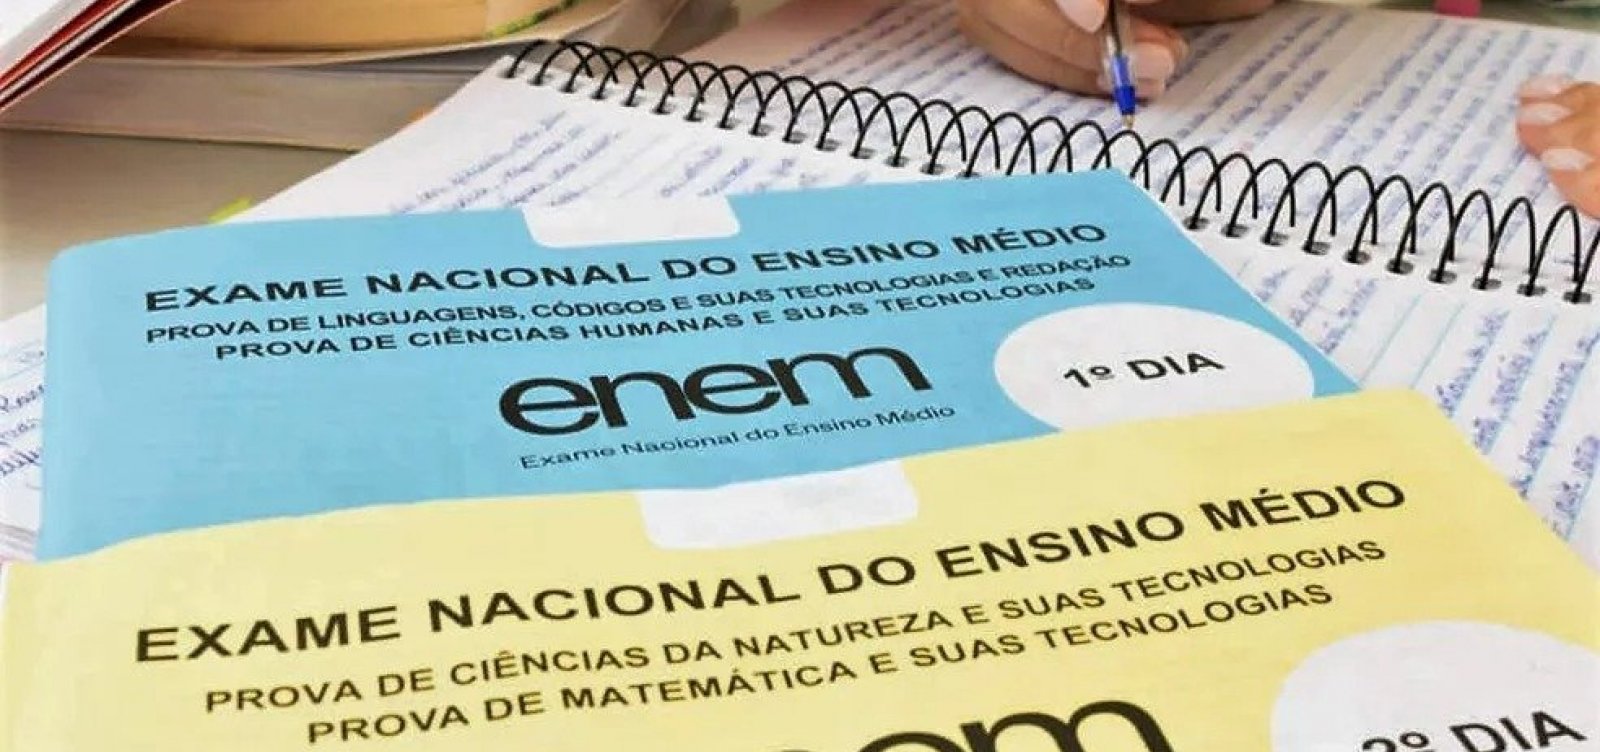 Gabarito oficial do Enem será divulgado nesta quarta-feira, diz ministro da Educação